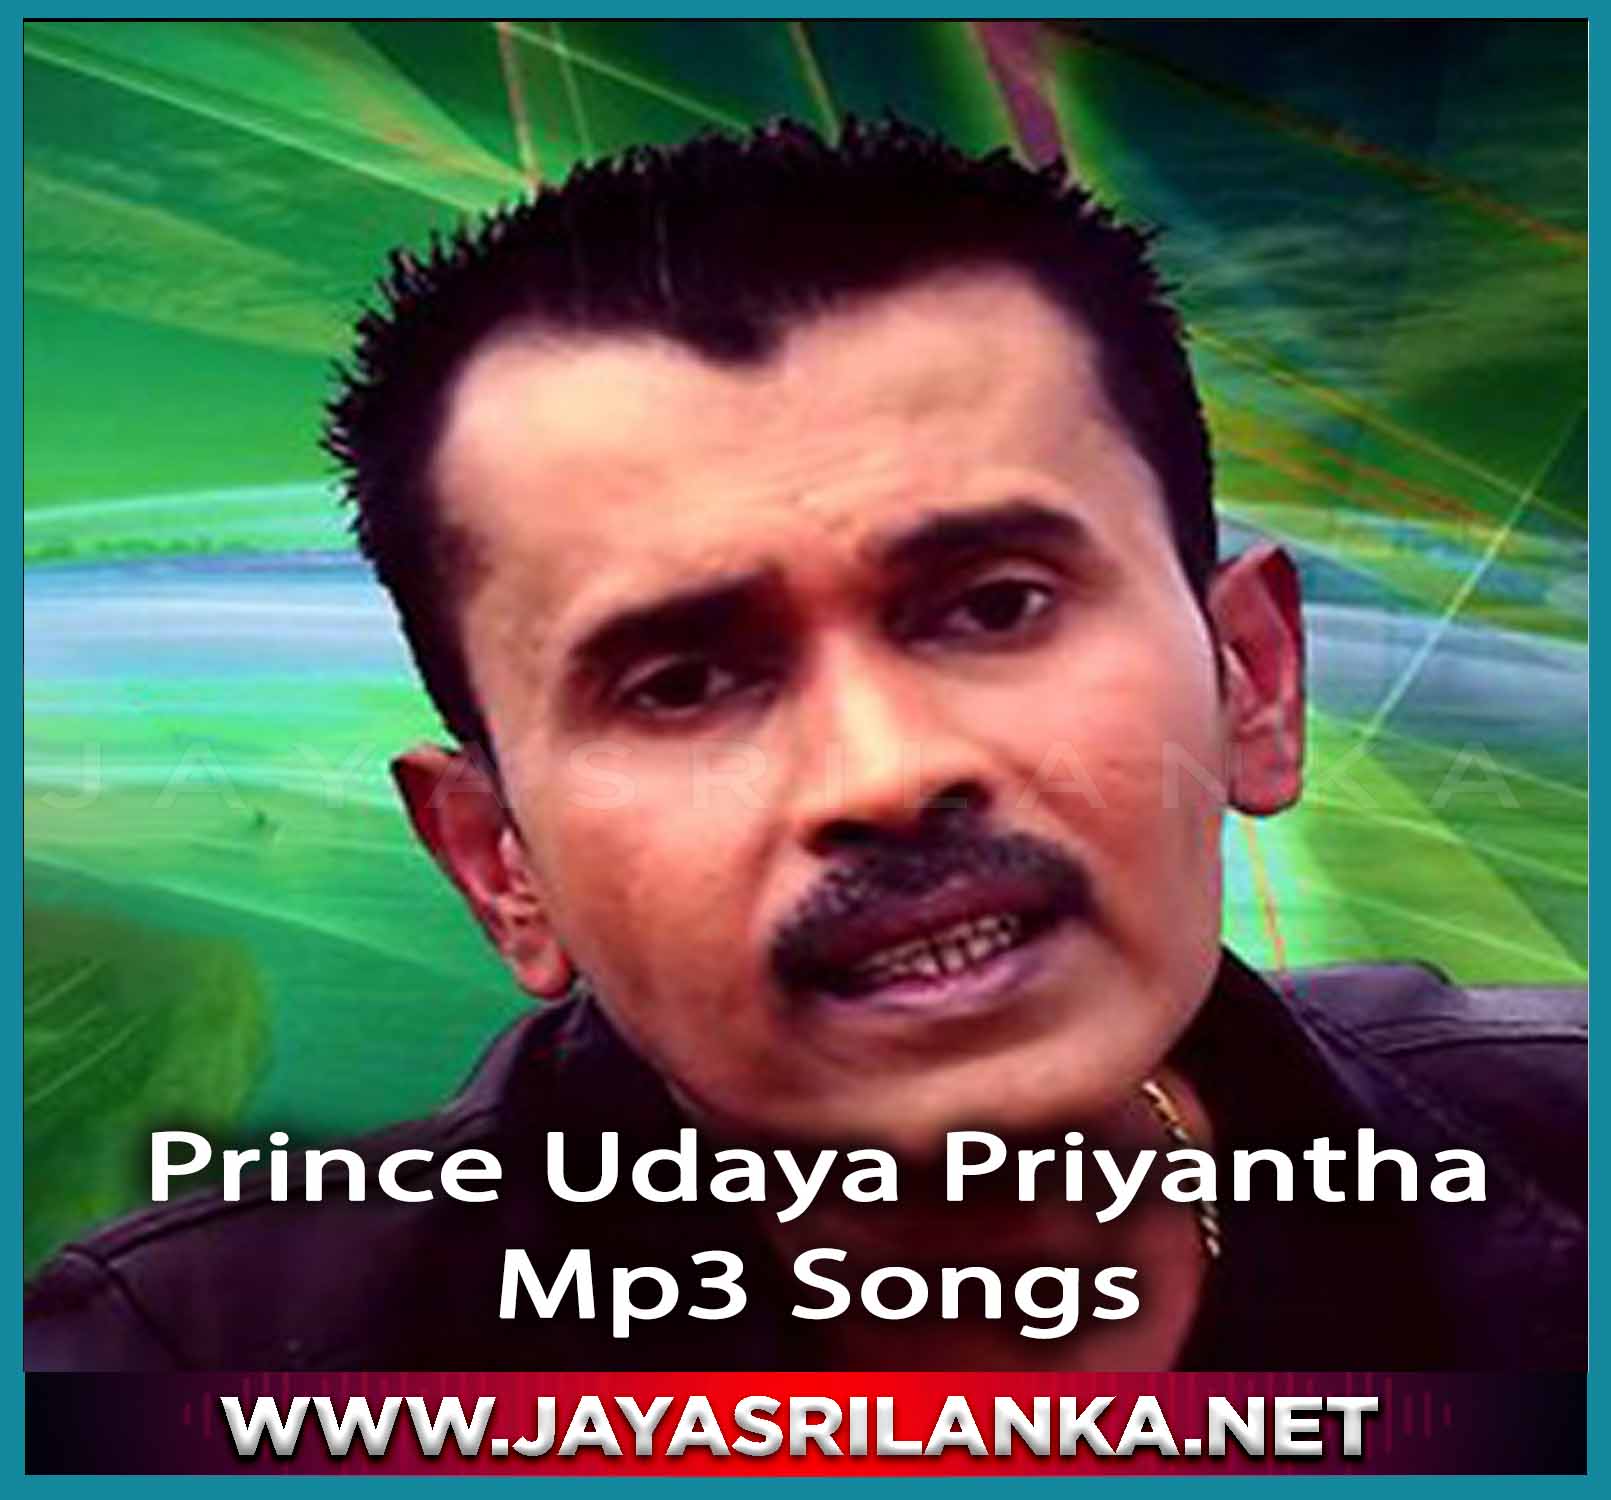 Kale Honda Nam - Prince Udaya Priyantha mp3 Image